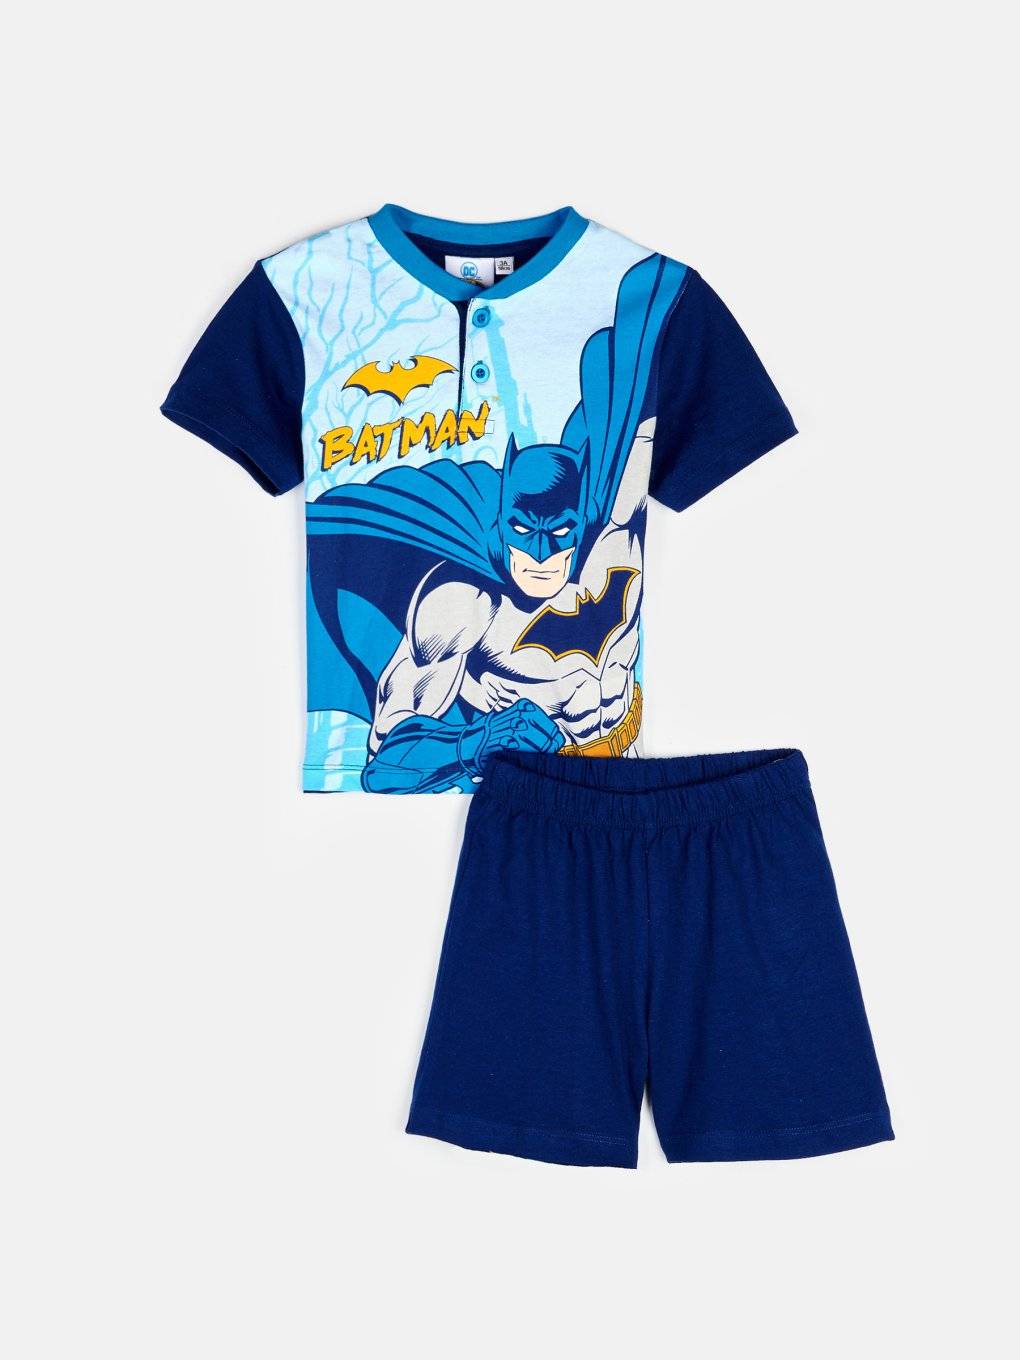 Dwuczęściowa piżama Batman